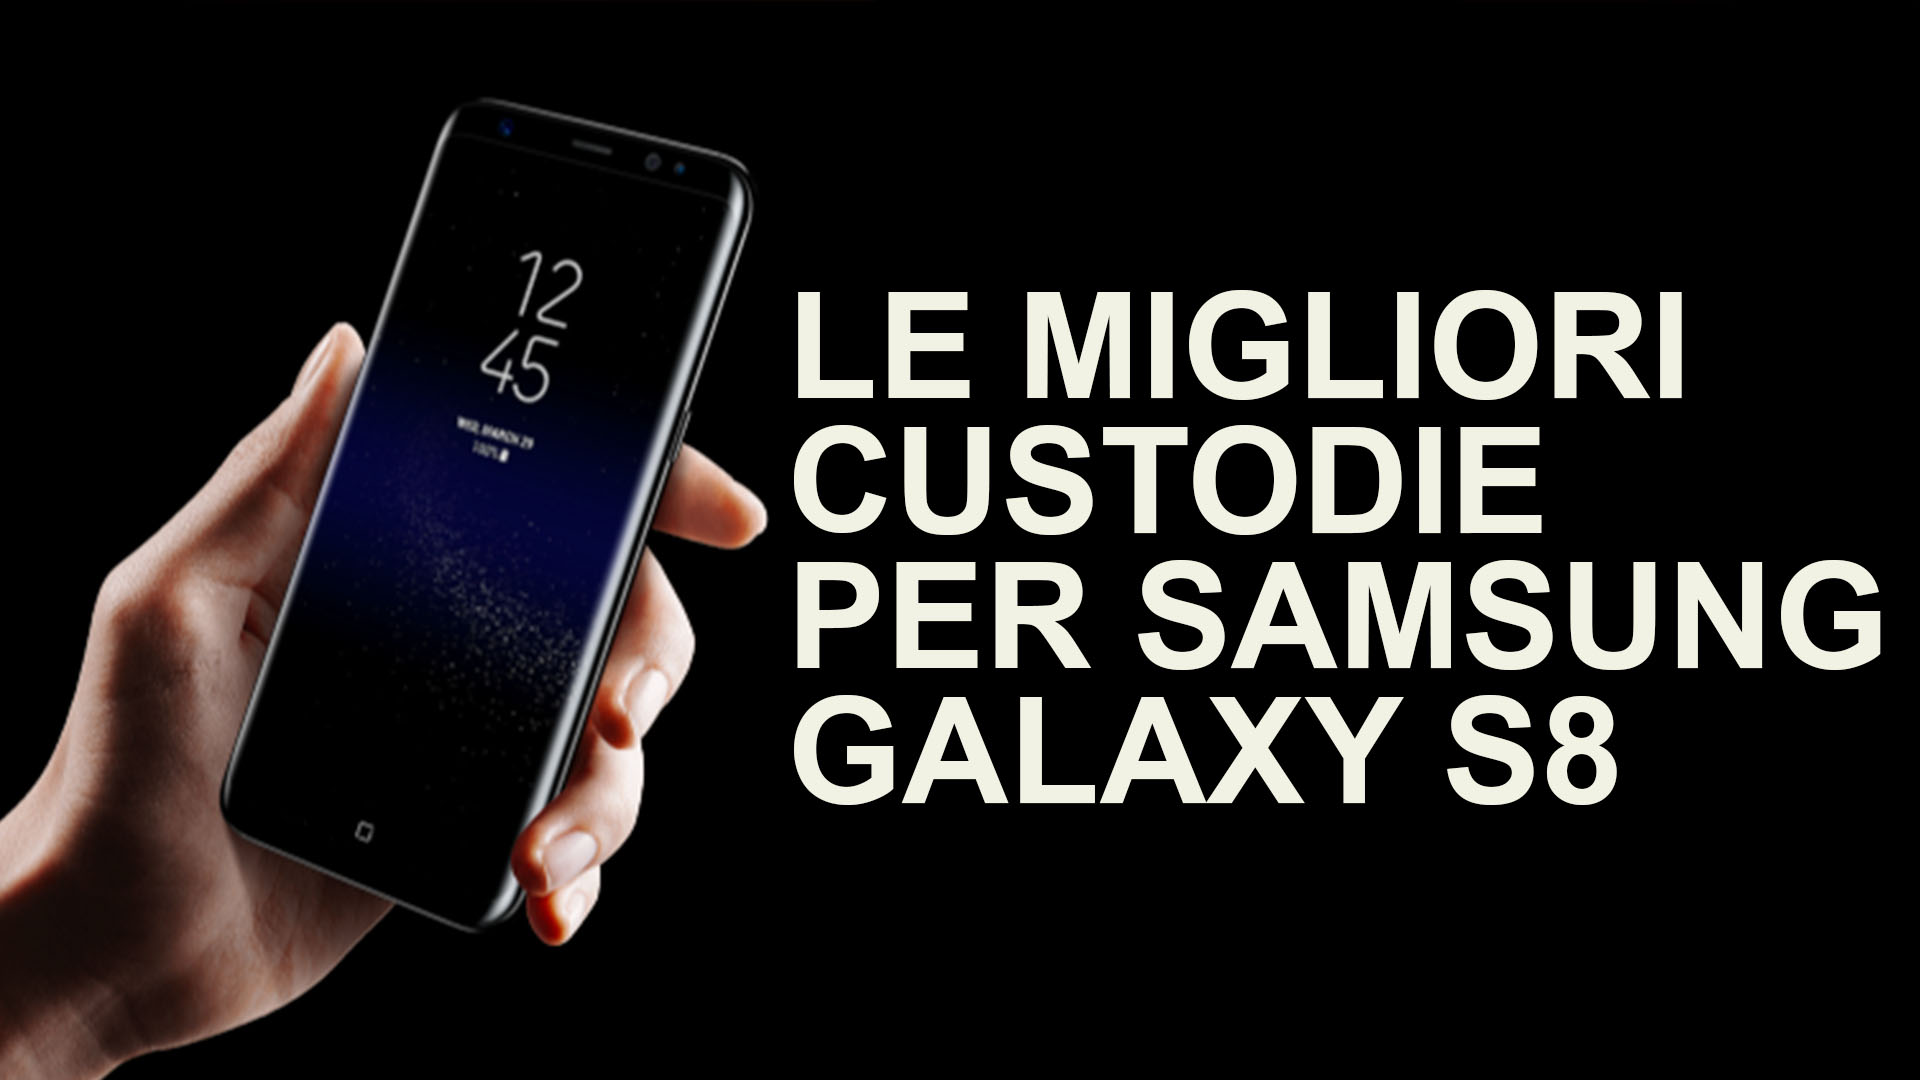 Le migliori custodie per Samsung Galaxy S8